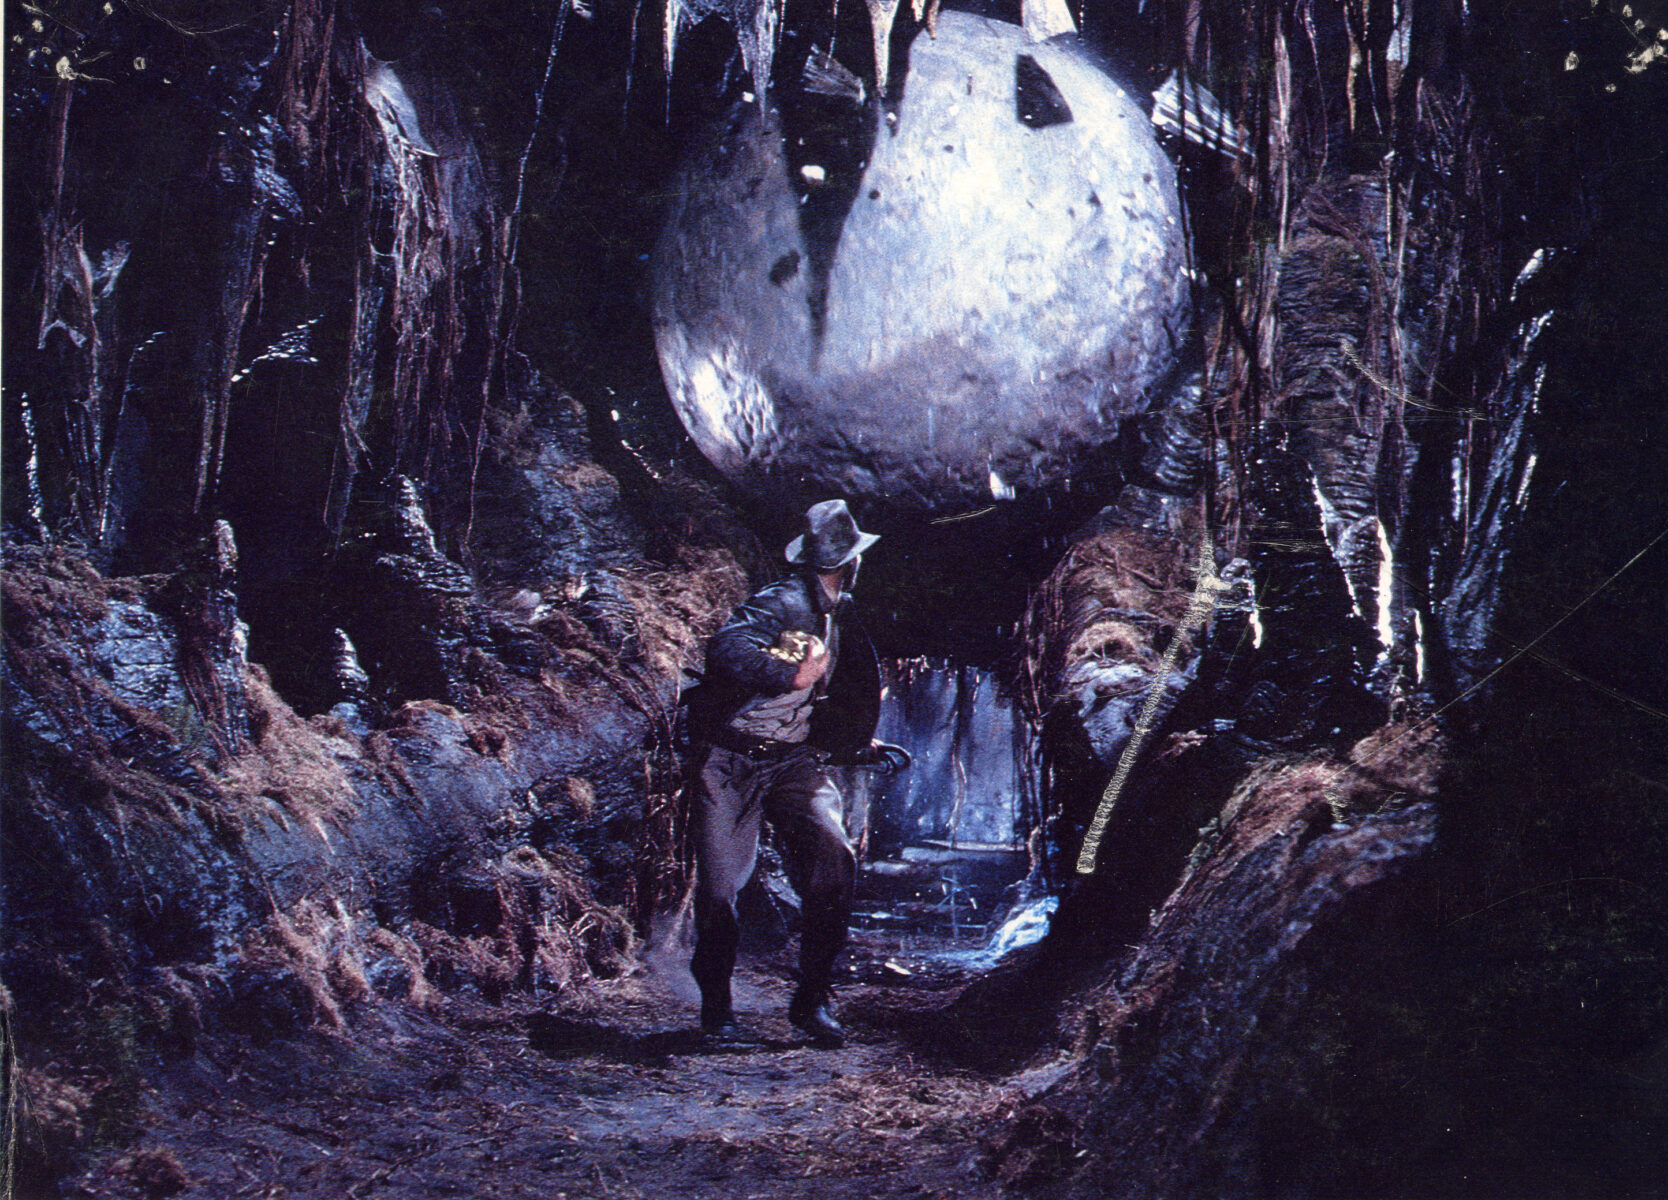 Raiders of the lost ark 2 Spielberg